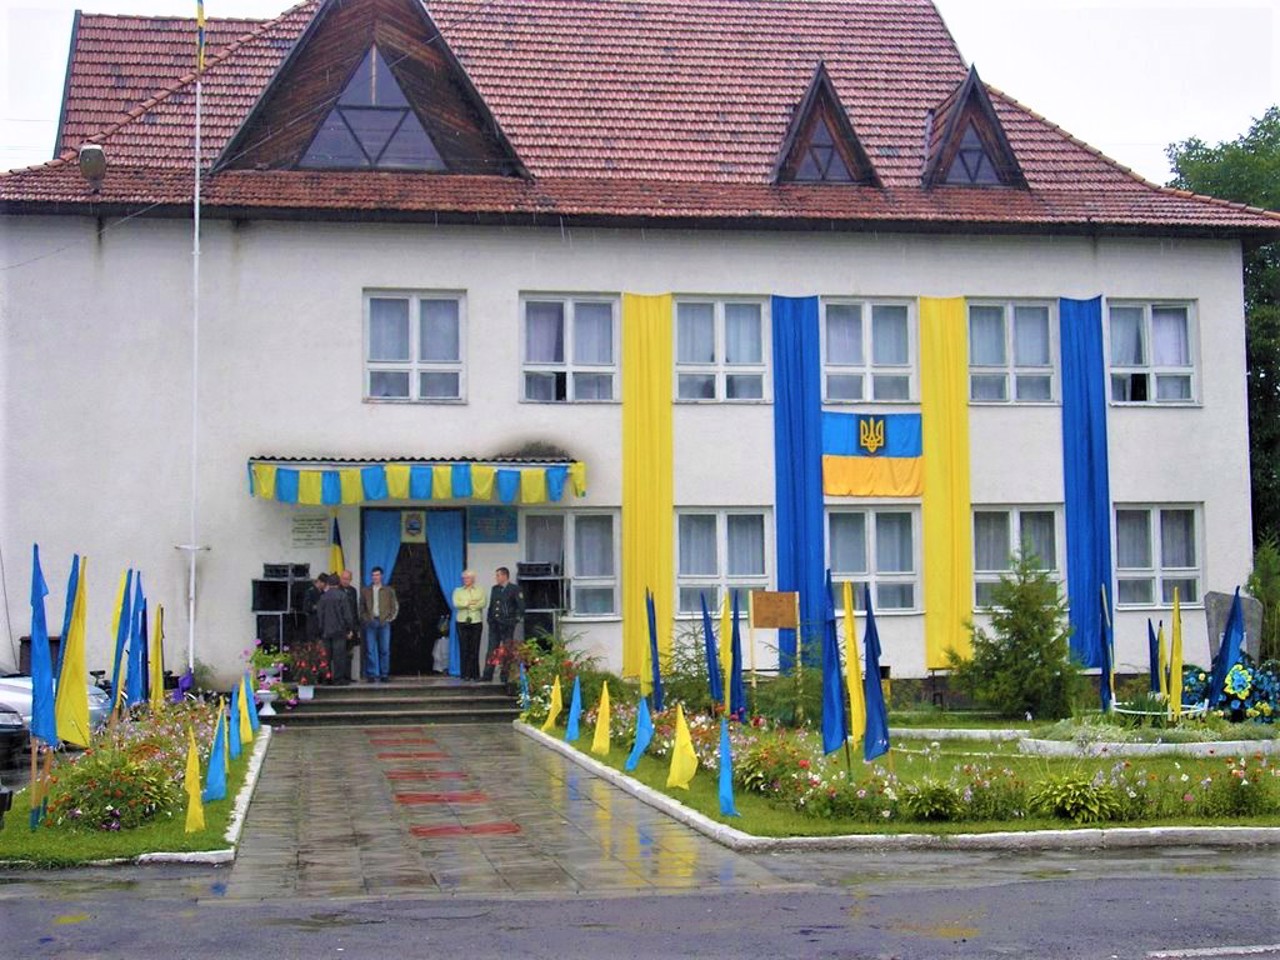 Velykyi Bychkiv village